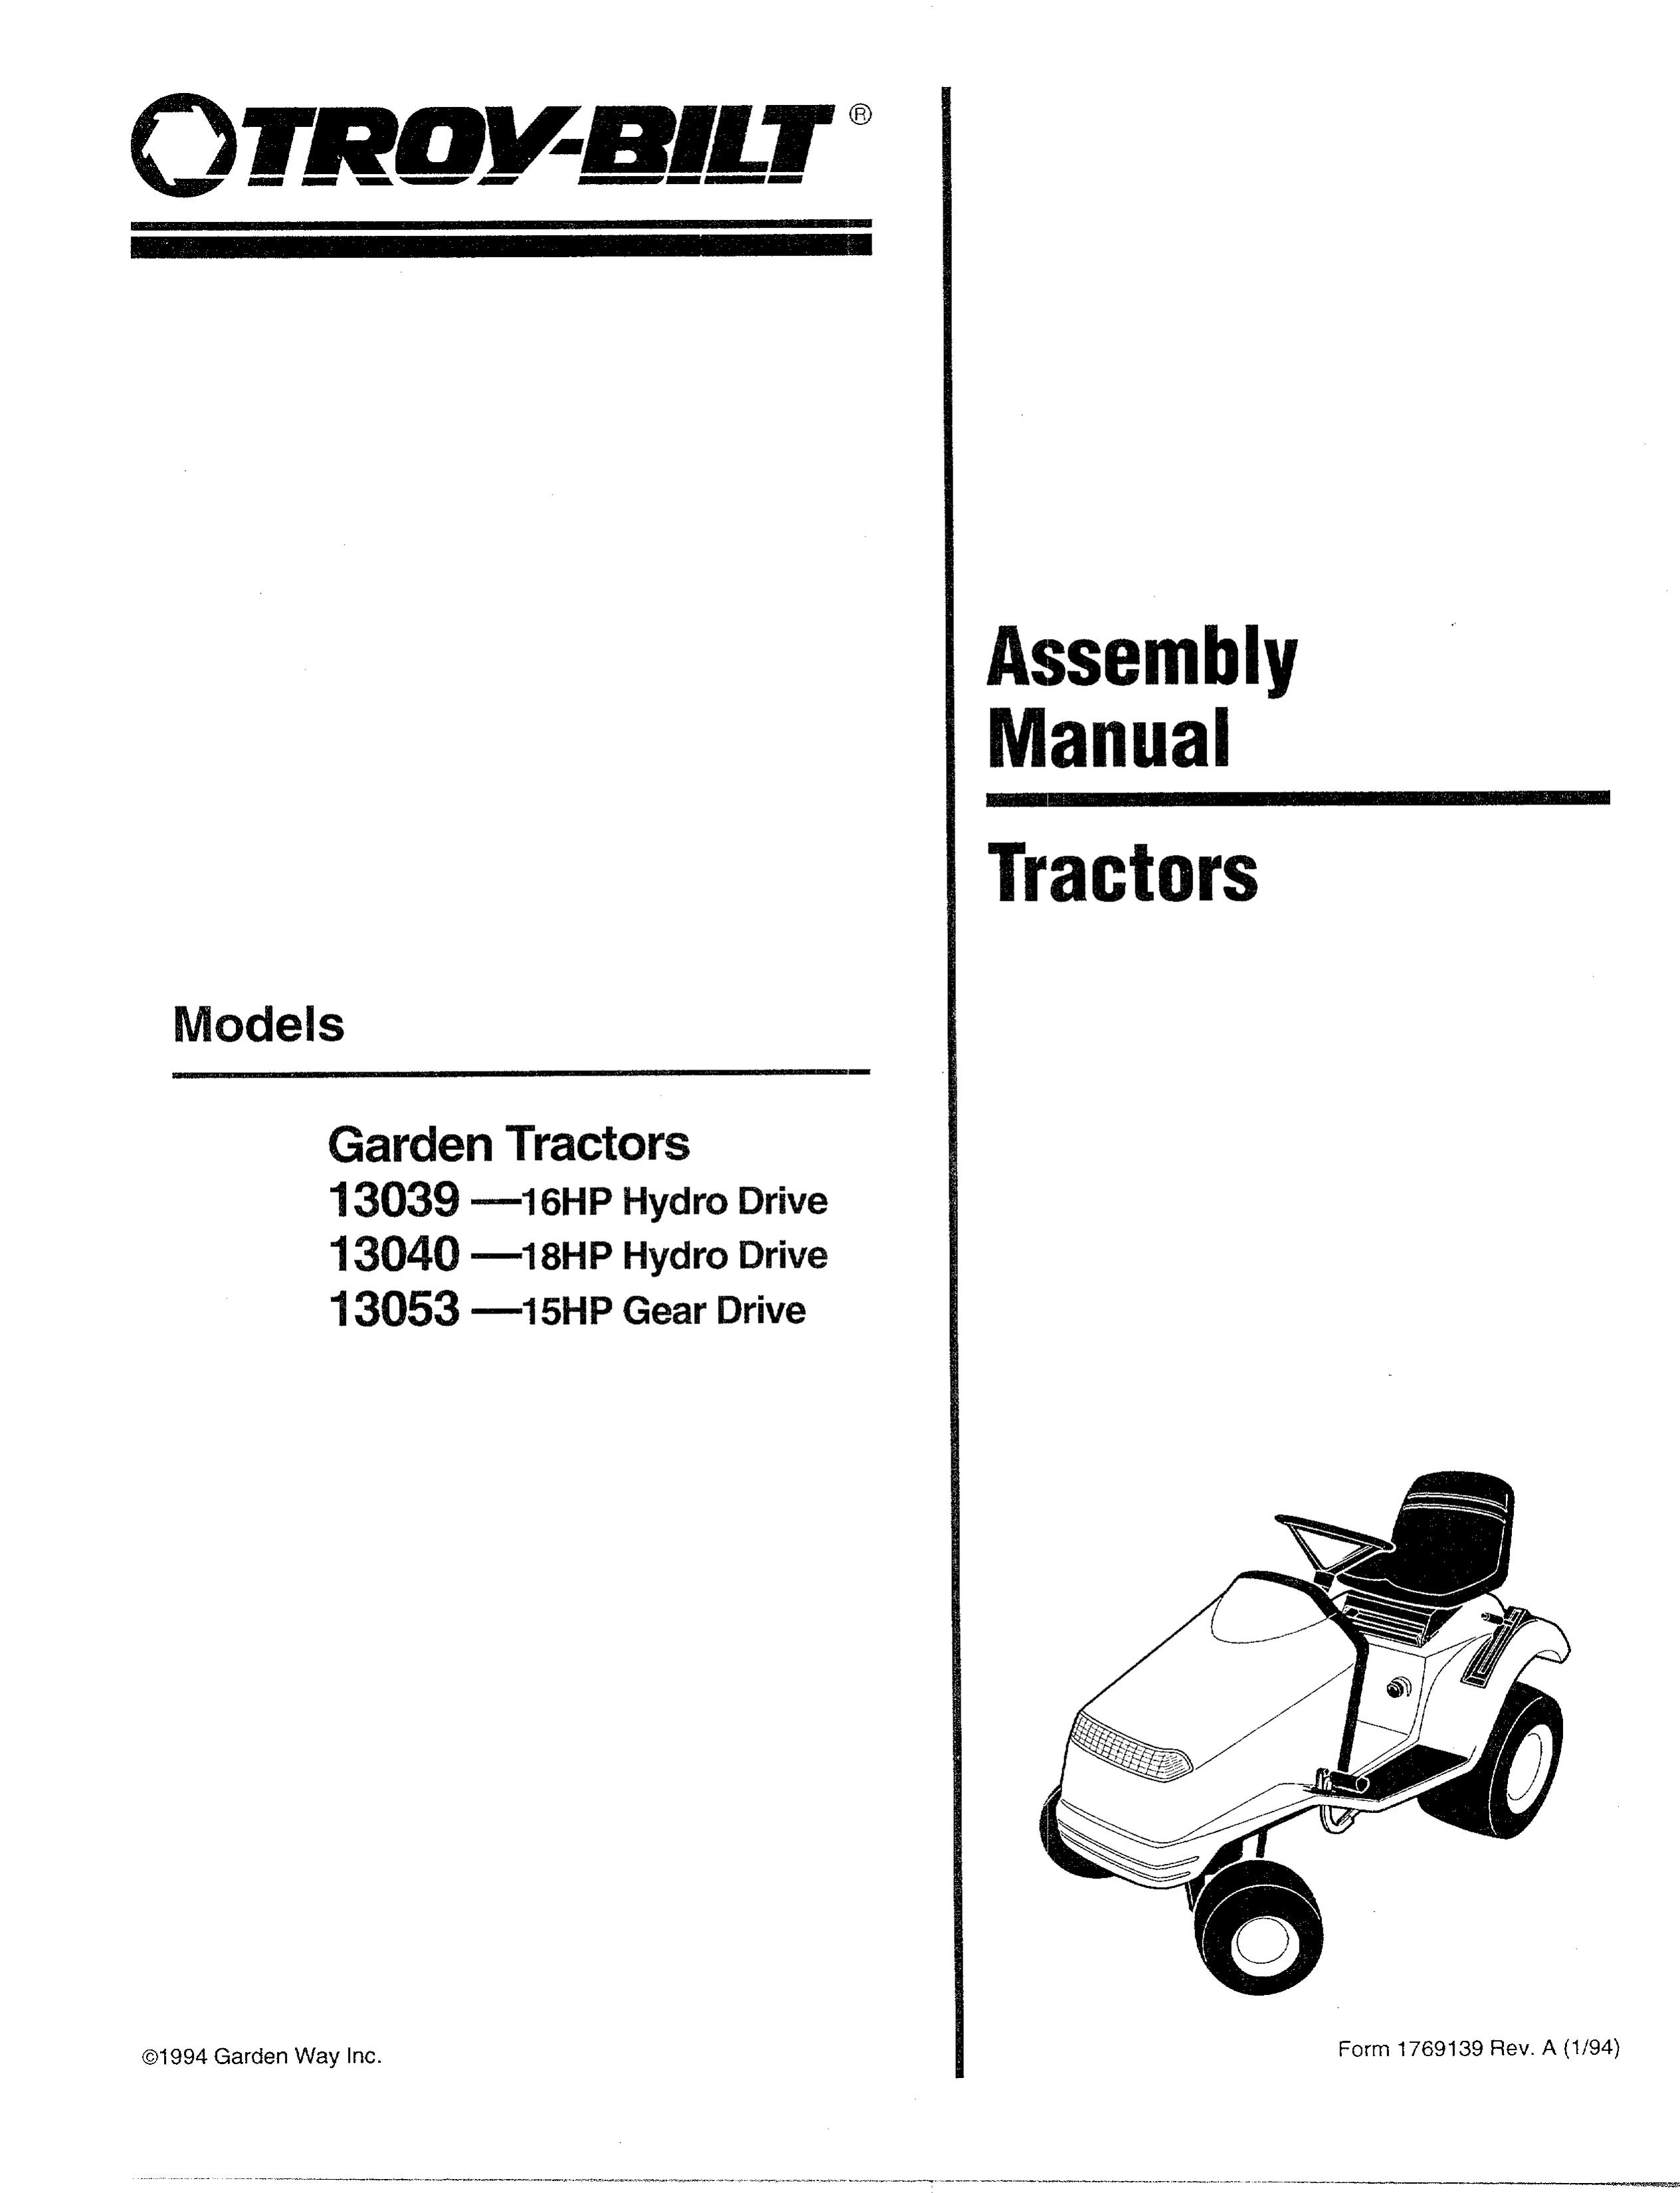 Troy-Bilt 13053-15HP Lawn Mower User Manual